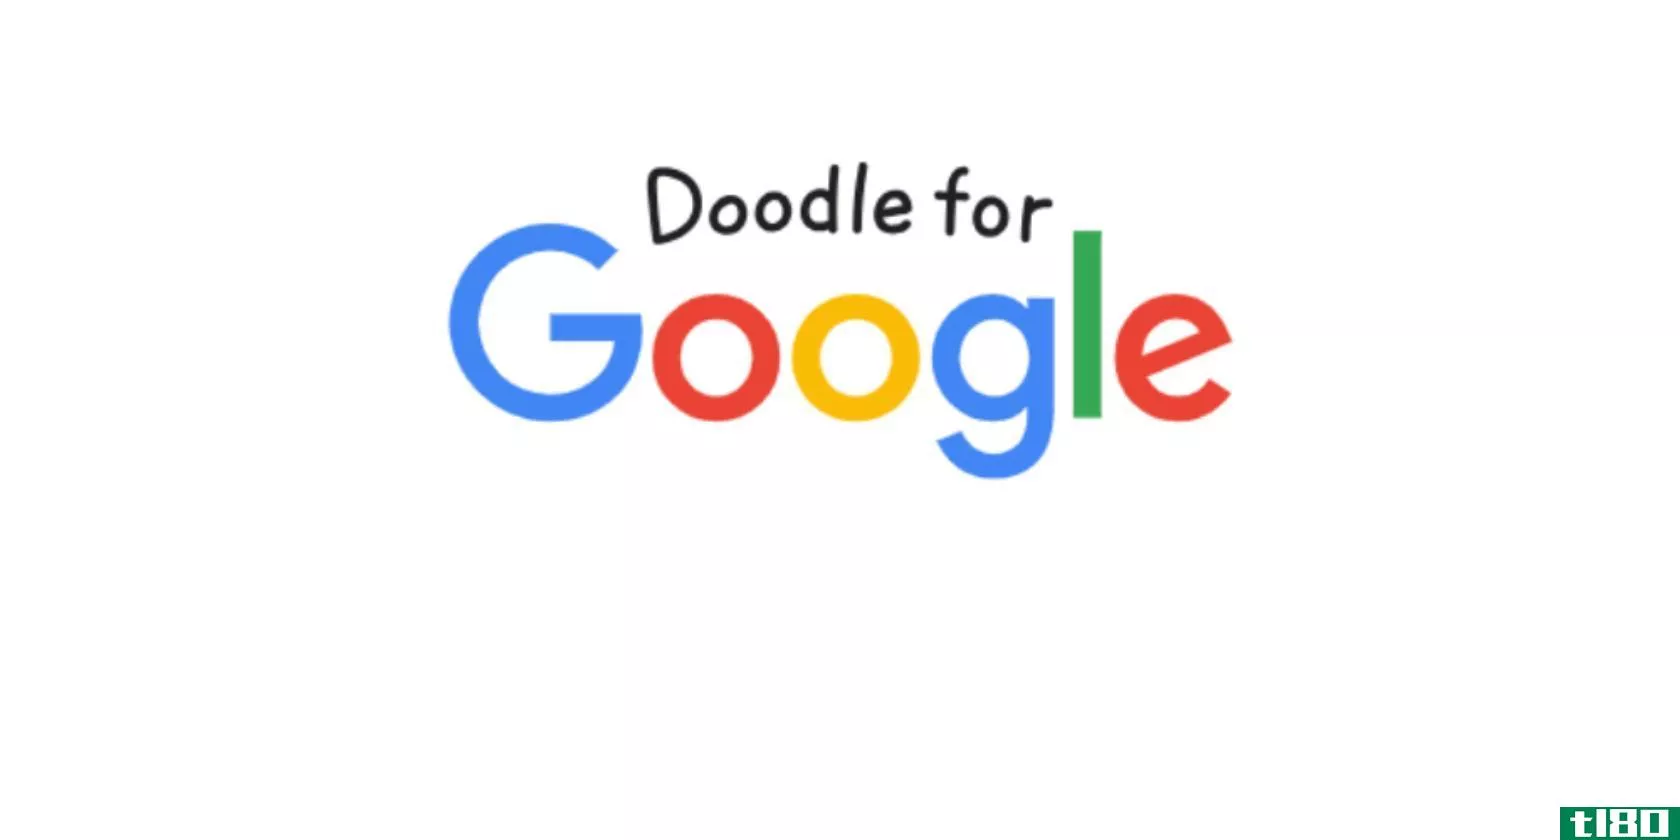 doodle-for-google-logo